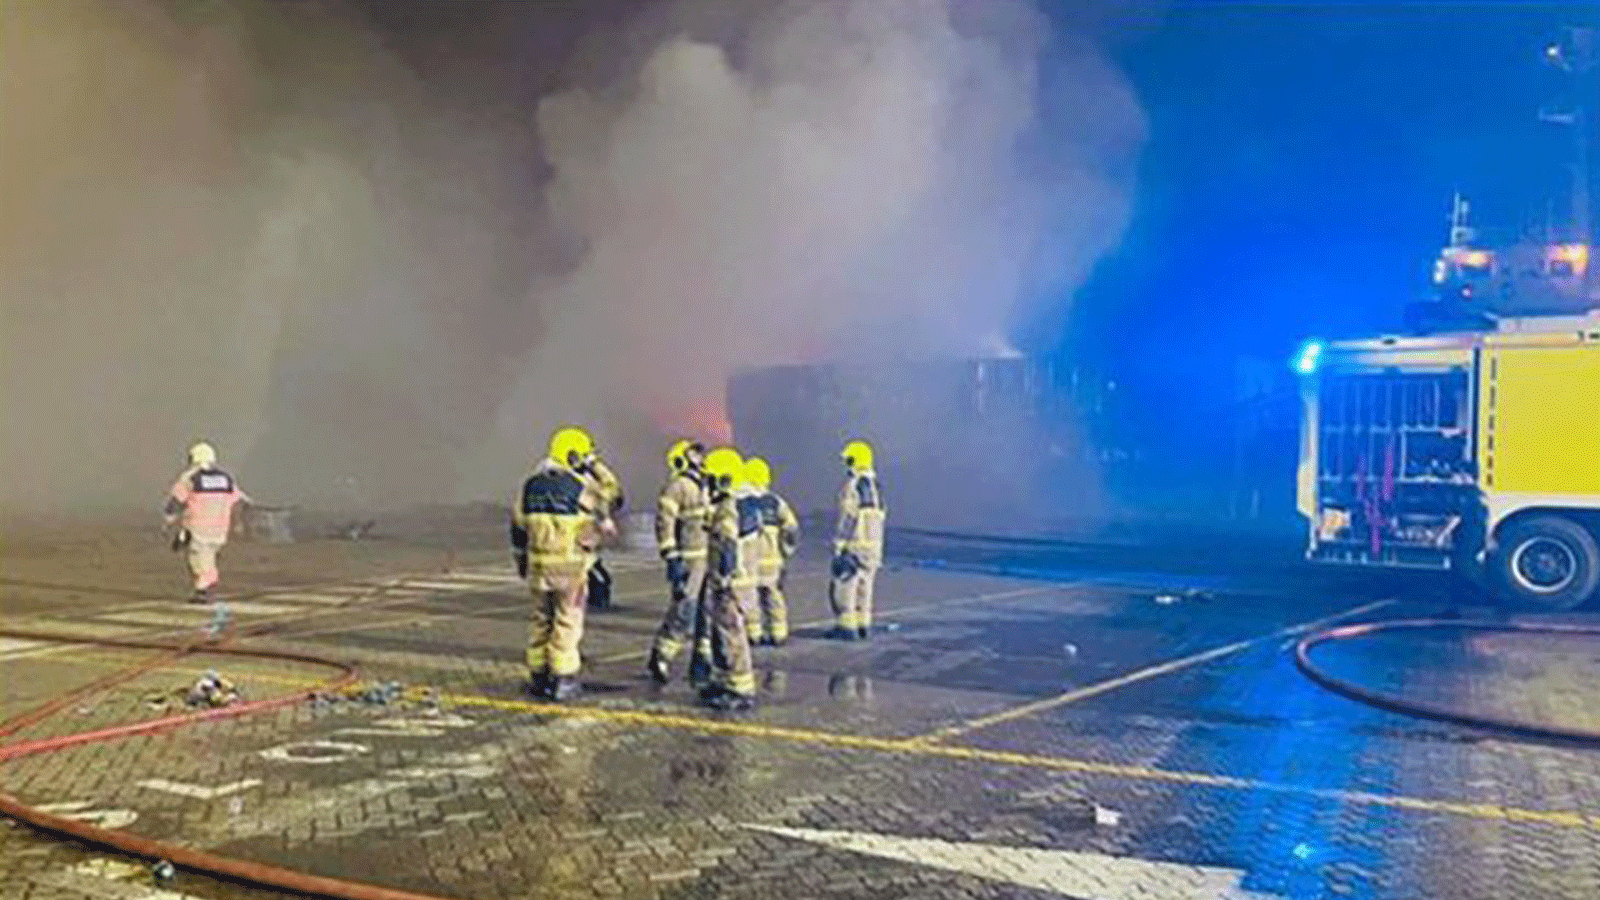 تُظهر هذه الصورة المنشورة التي قدمها المكتب الإعلامي لحكومة دبي رجال إطفاء بالدفاع المدني في موقع الحريق الذي اندلع في ميناء جبل علي الرئيسي في دبي، 8 تموز/يوليو 2021